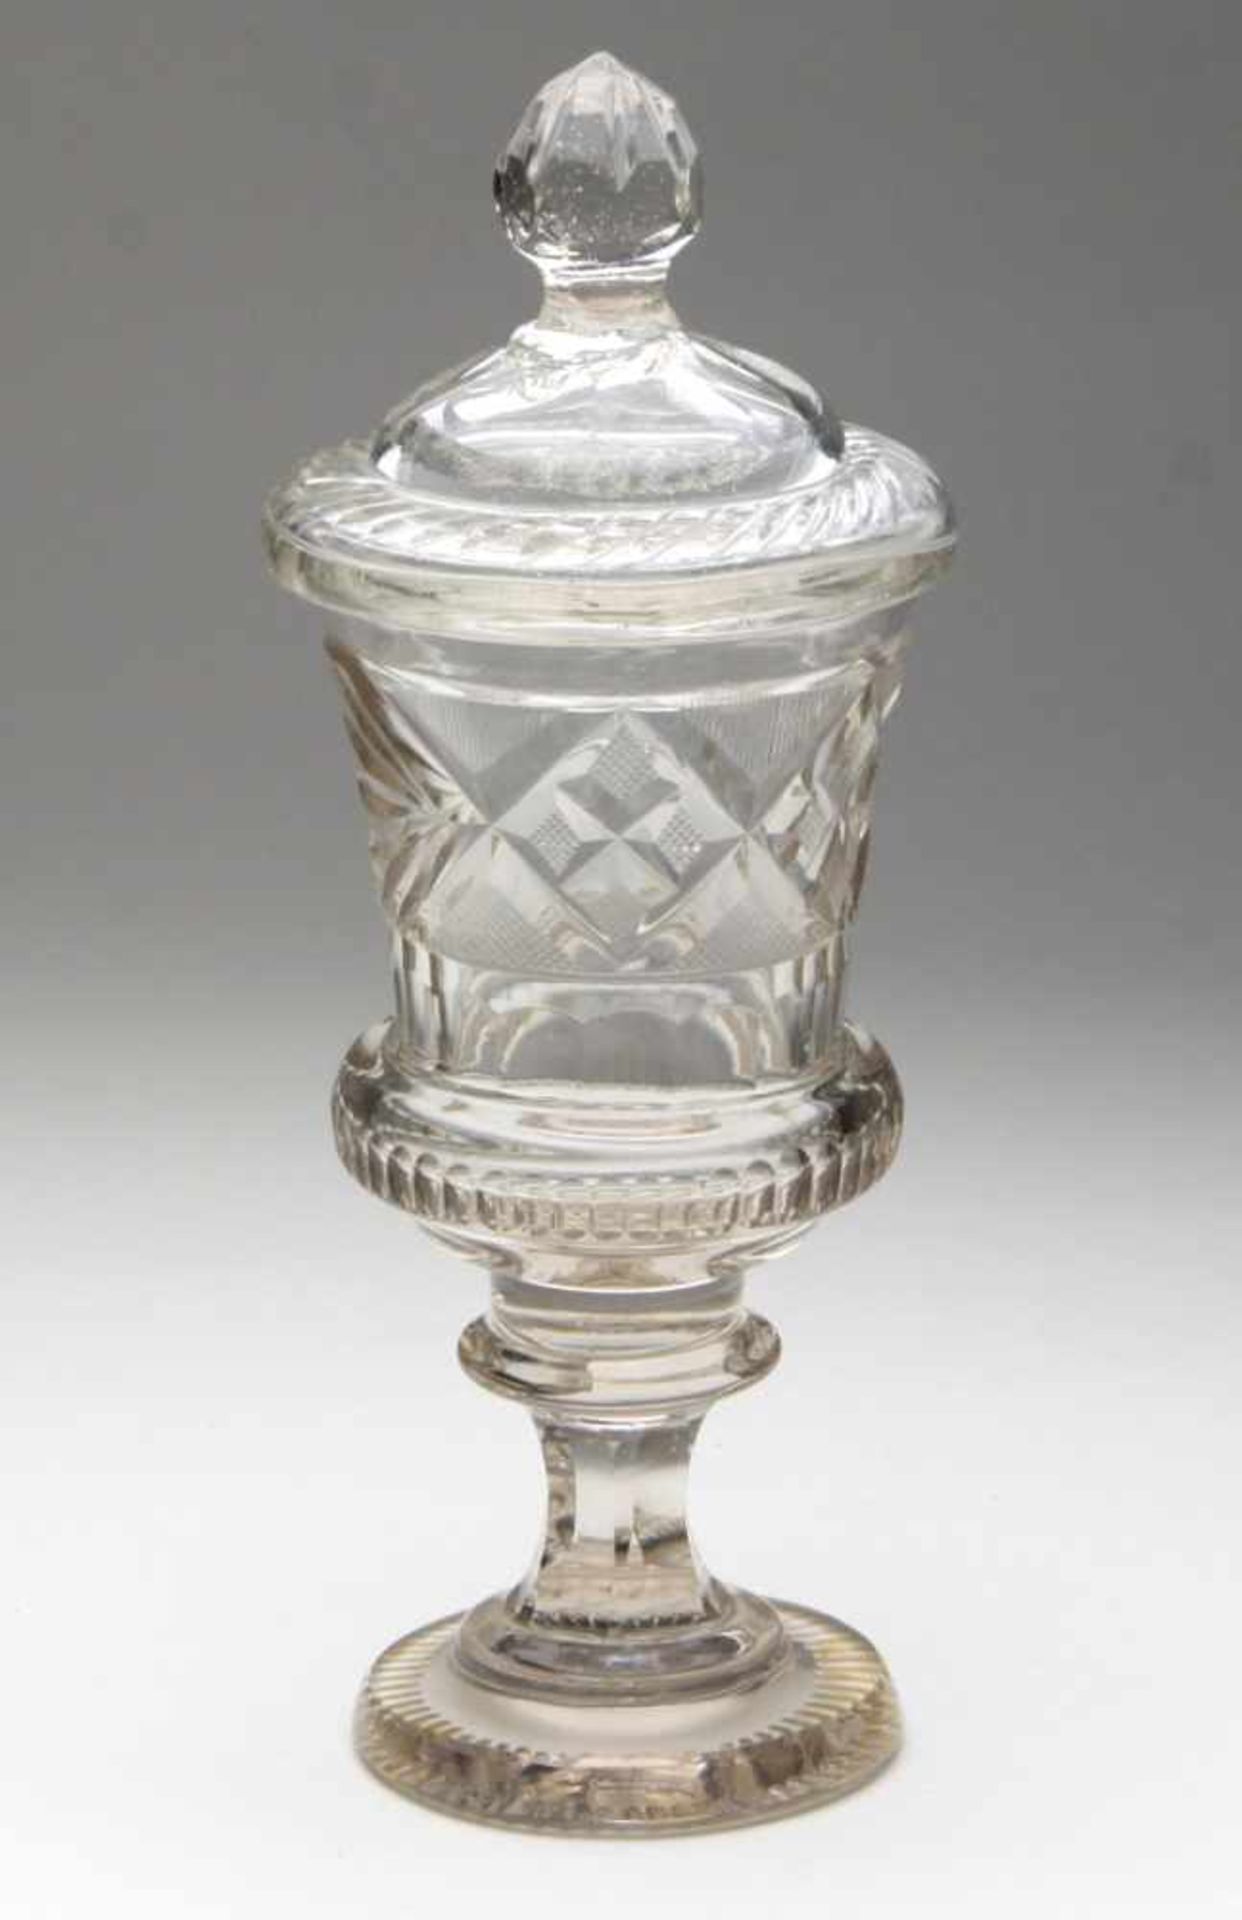 Deckelpokal um 1850 farbloses Kristallglas mundgeblasen u. von Hand beschliffen, Boden gekugelt,